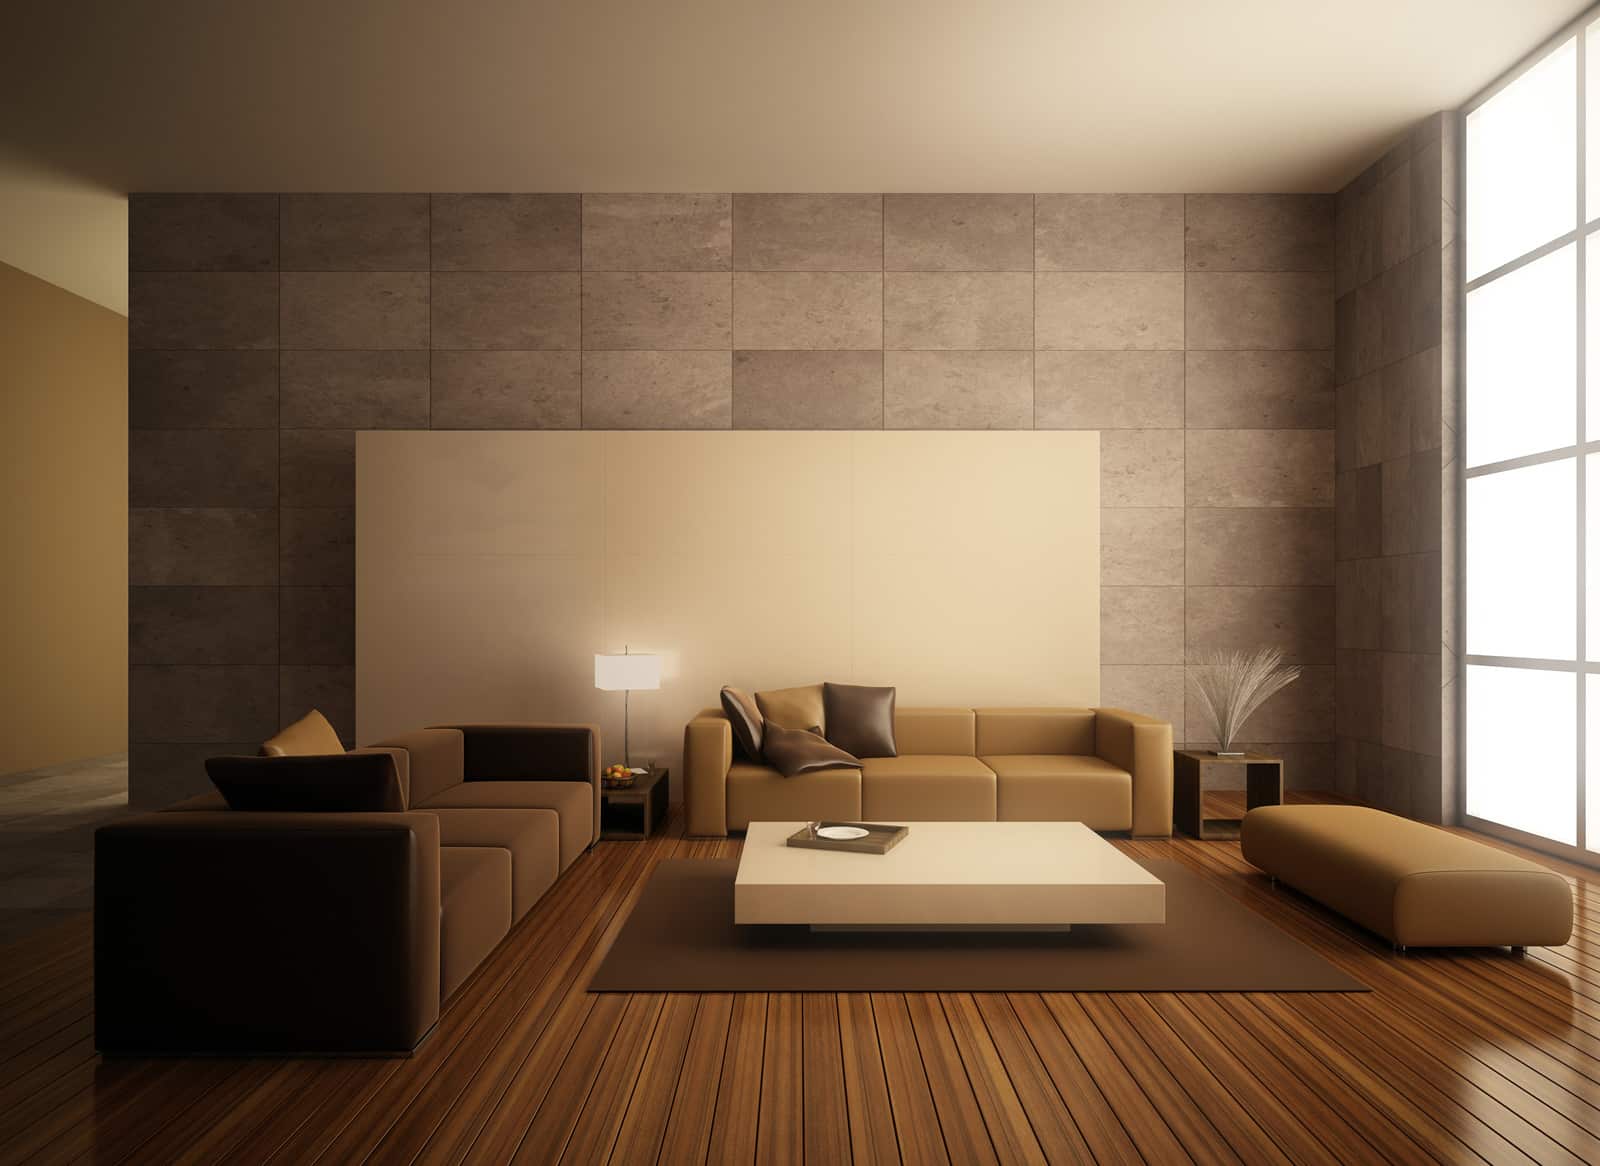  minimalist interior design in dubai